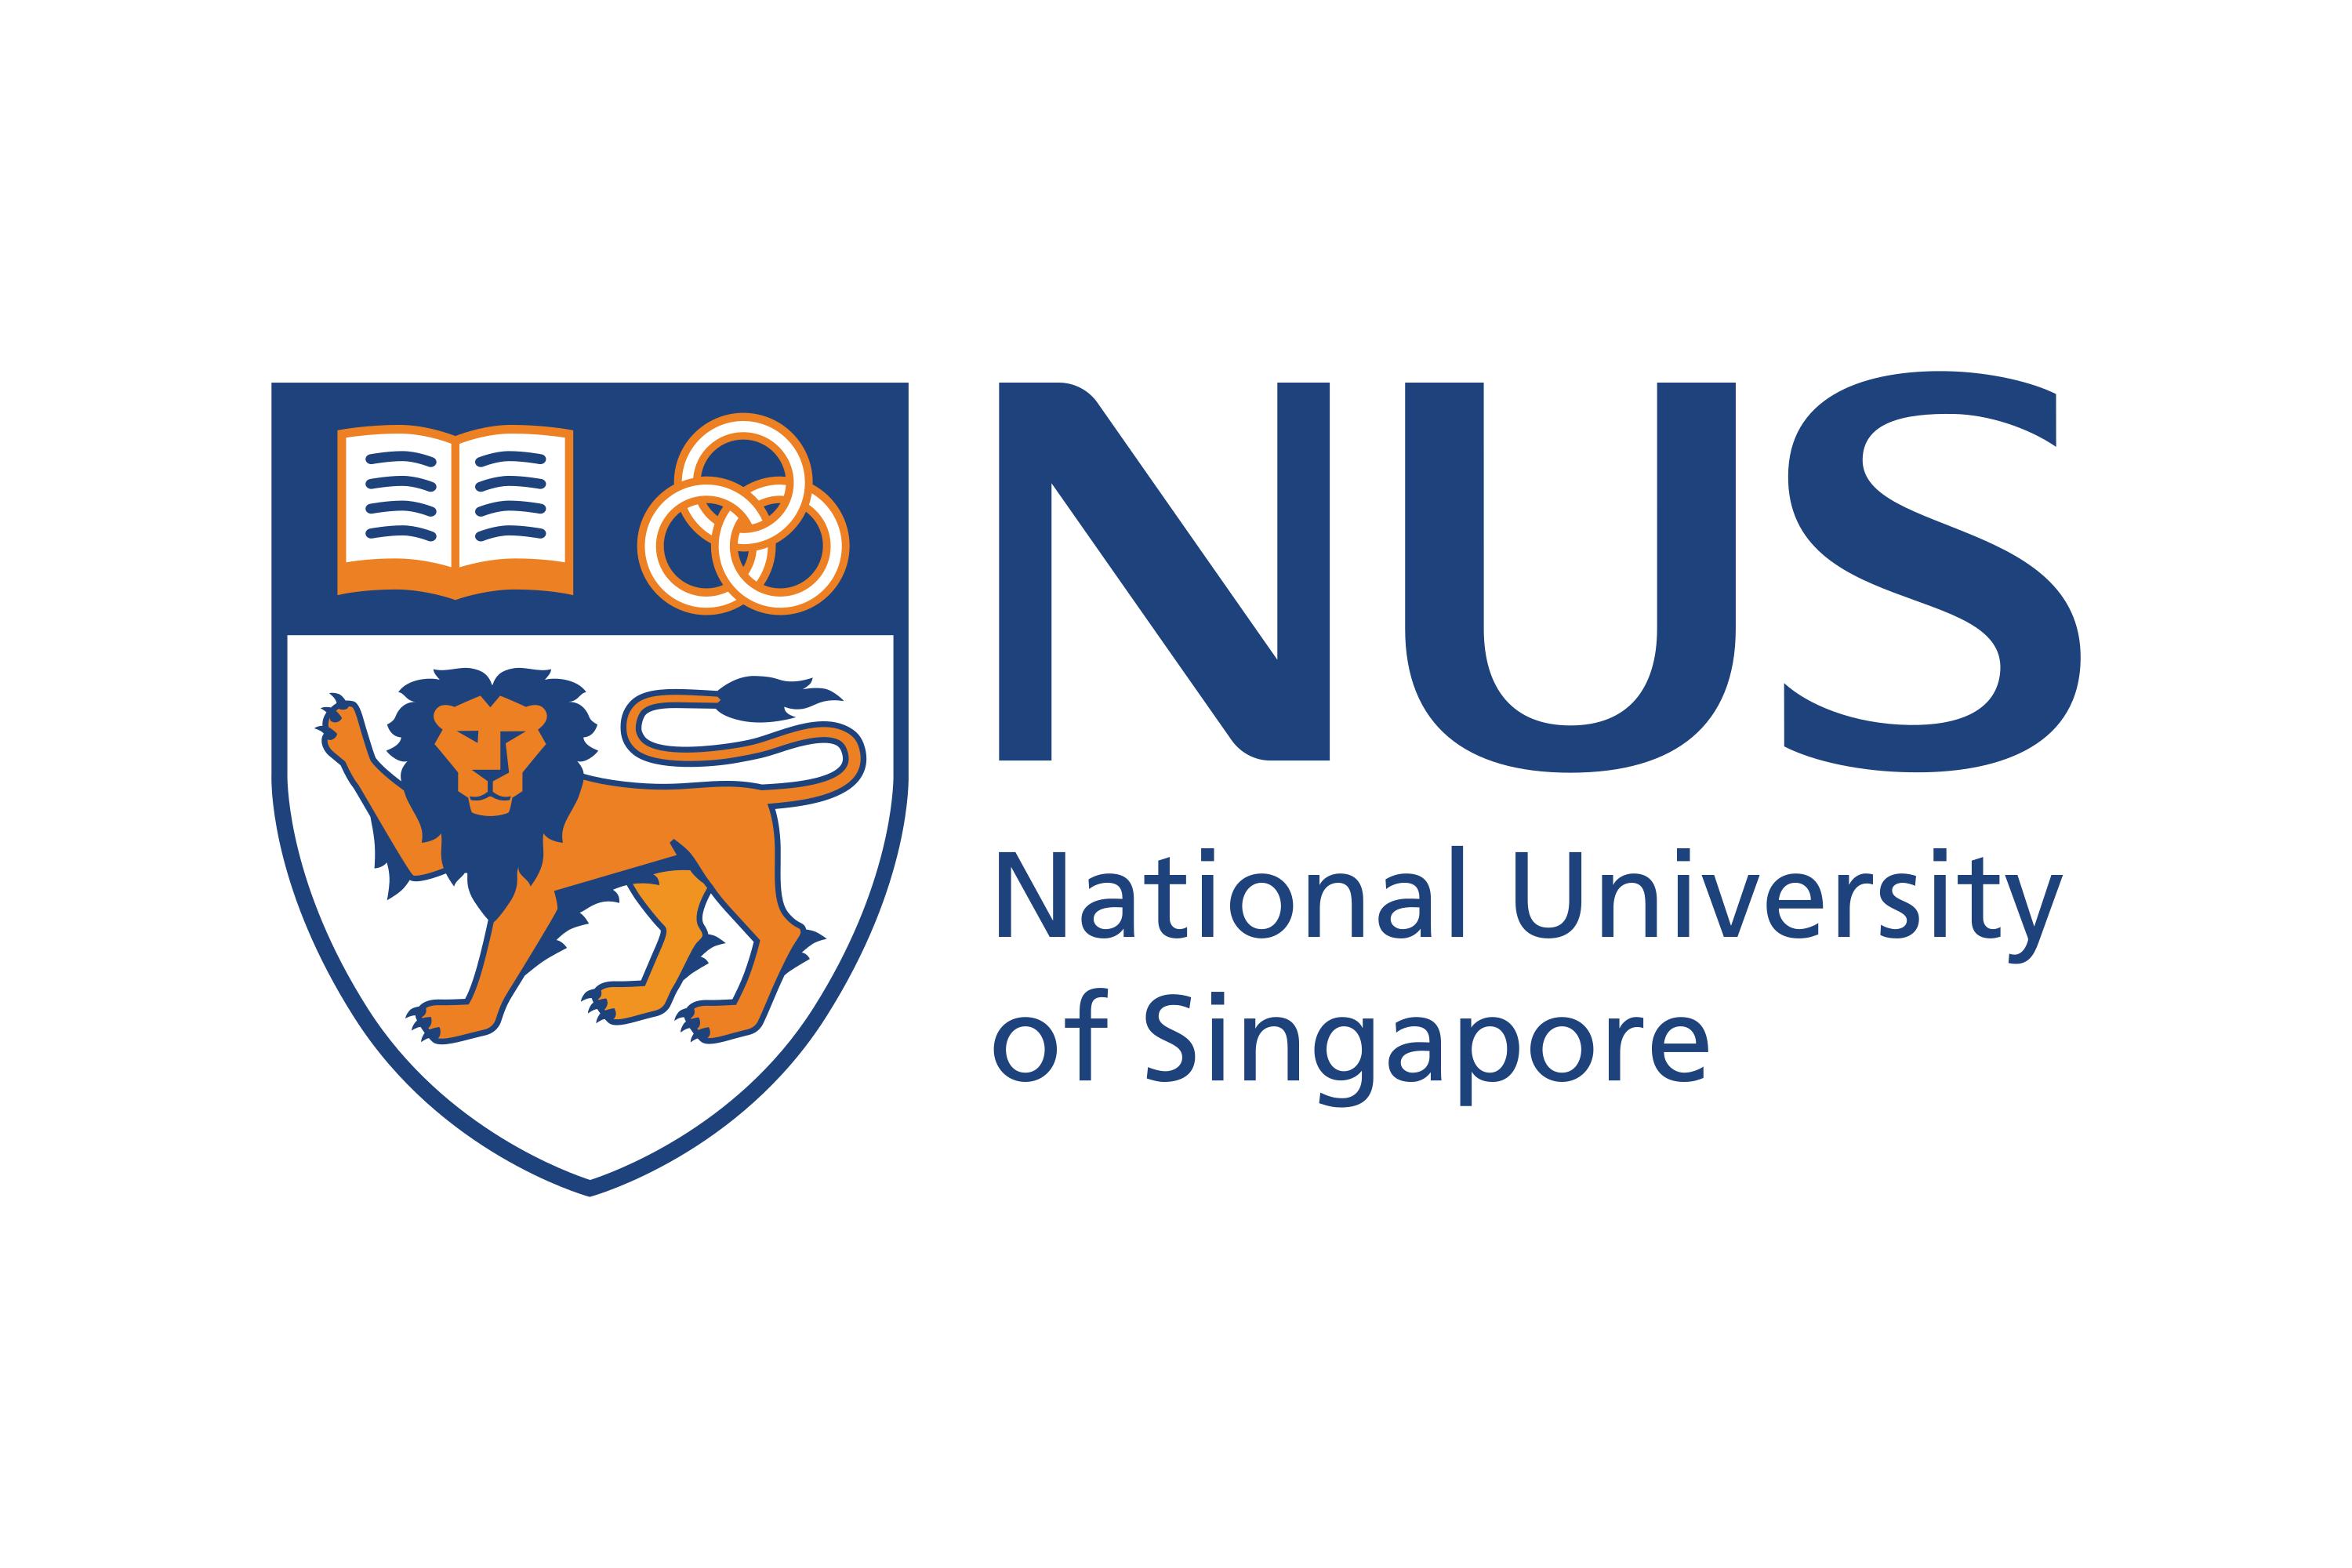 Descargue el logotipo de la Universidad Nacional de Singapur (NUS) en vector SVG o ...